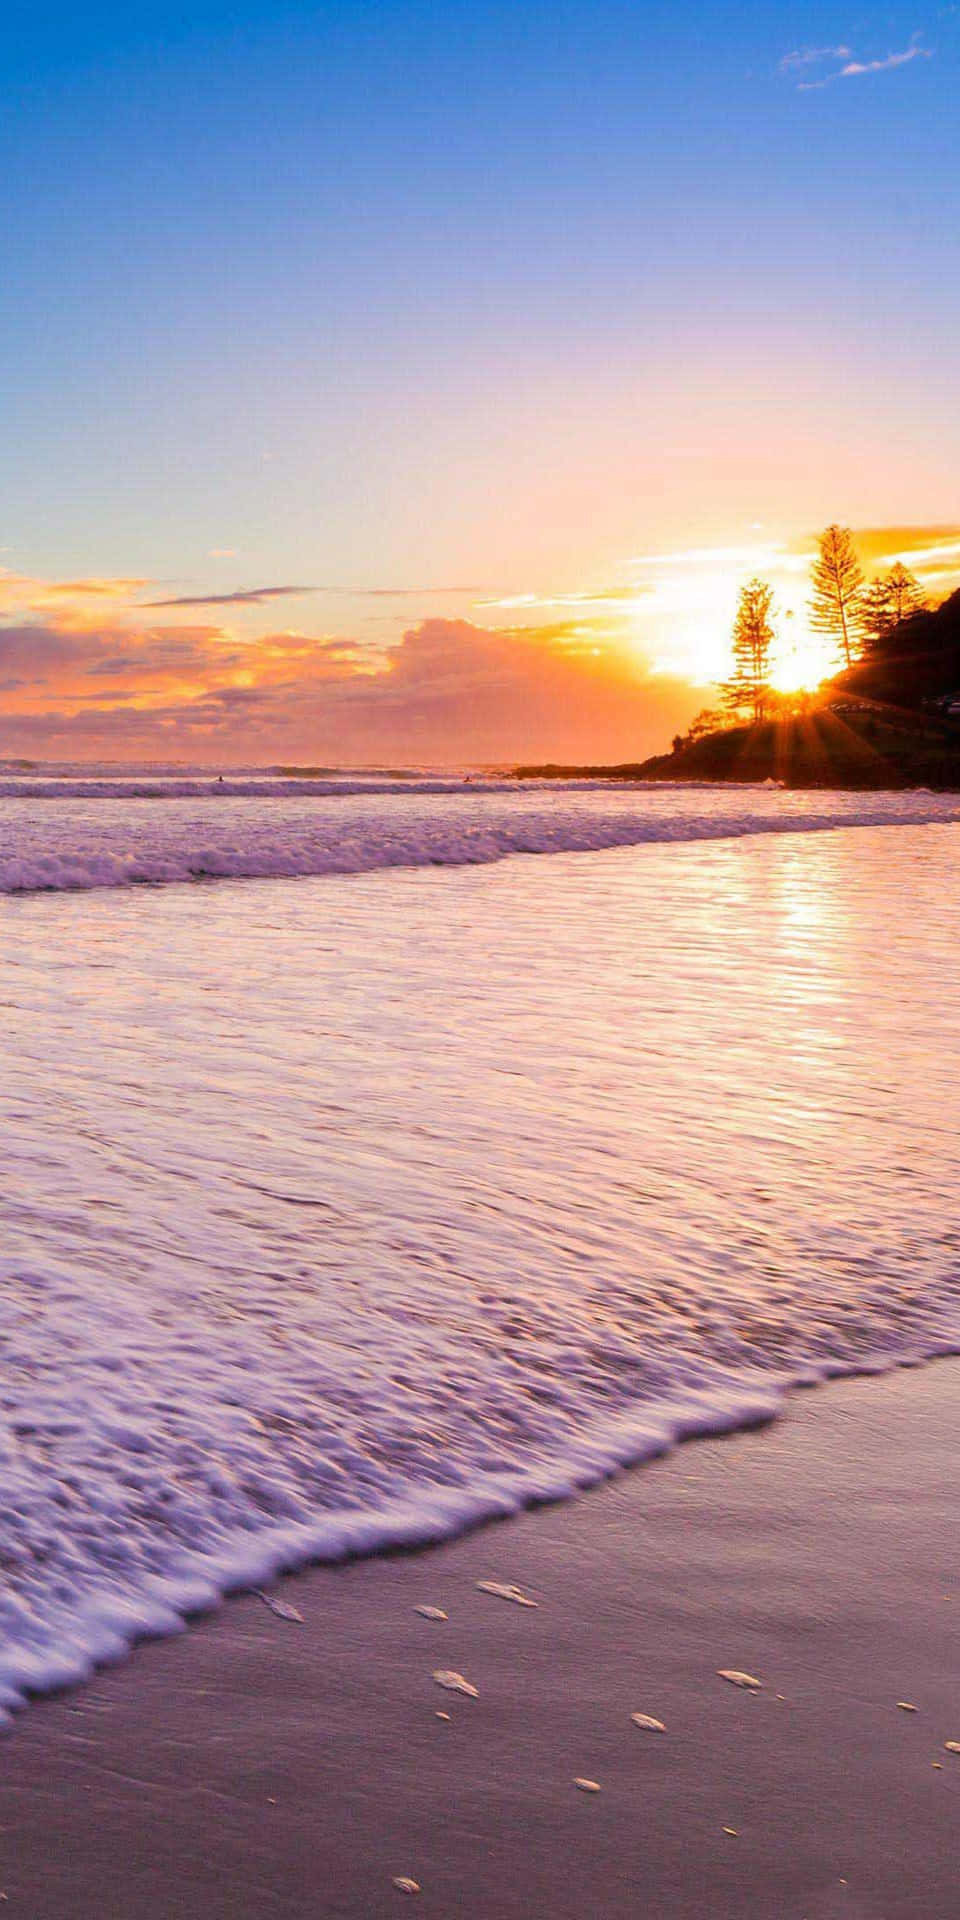 Vivela Belleza De La Vida En La Playa Con El Nuevo Pixel 3 De Google.